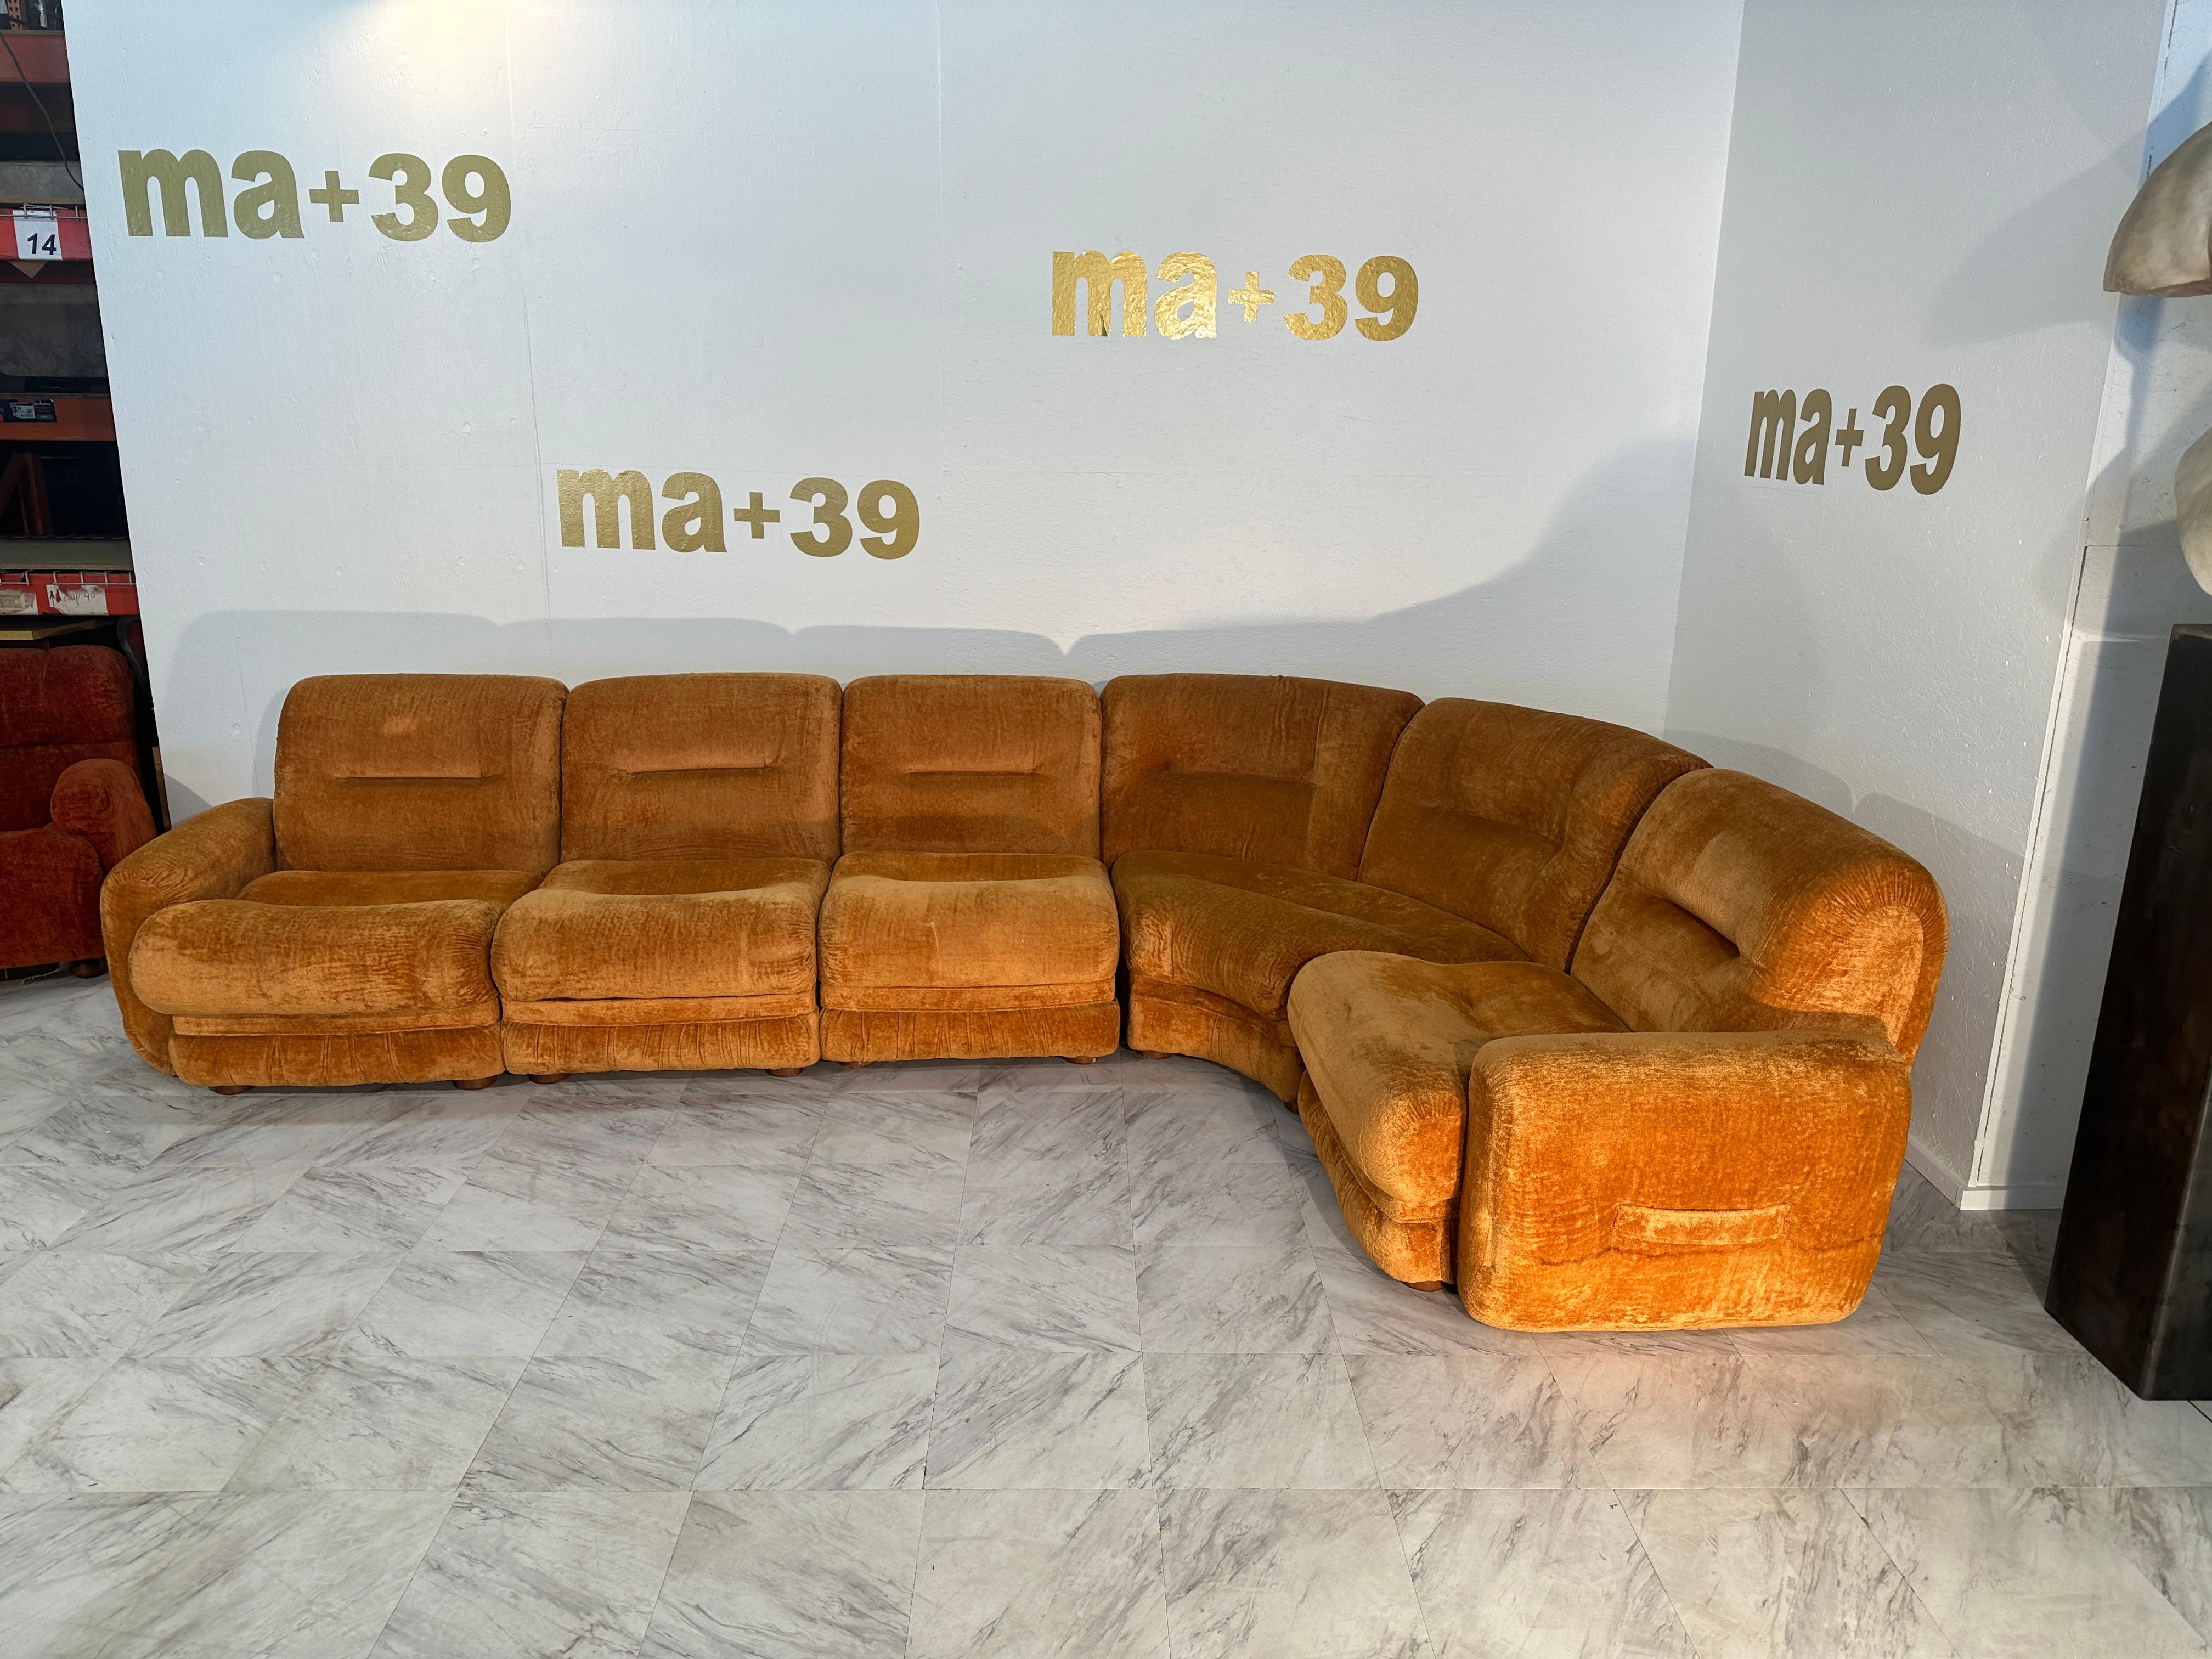 Ce magnifique canapé sectionnel italien du milieu du siècle dernier, datant des années 1980, est une pièce étonnante qui incarne l'esthétique du design de cette époque. Le canapé arbore son tissu orange d'origine, ajoutant une touche vibrante et